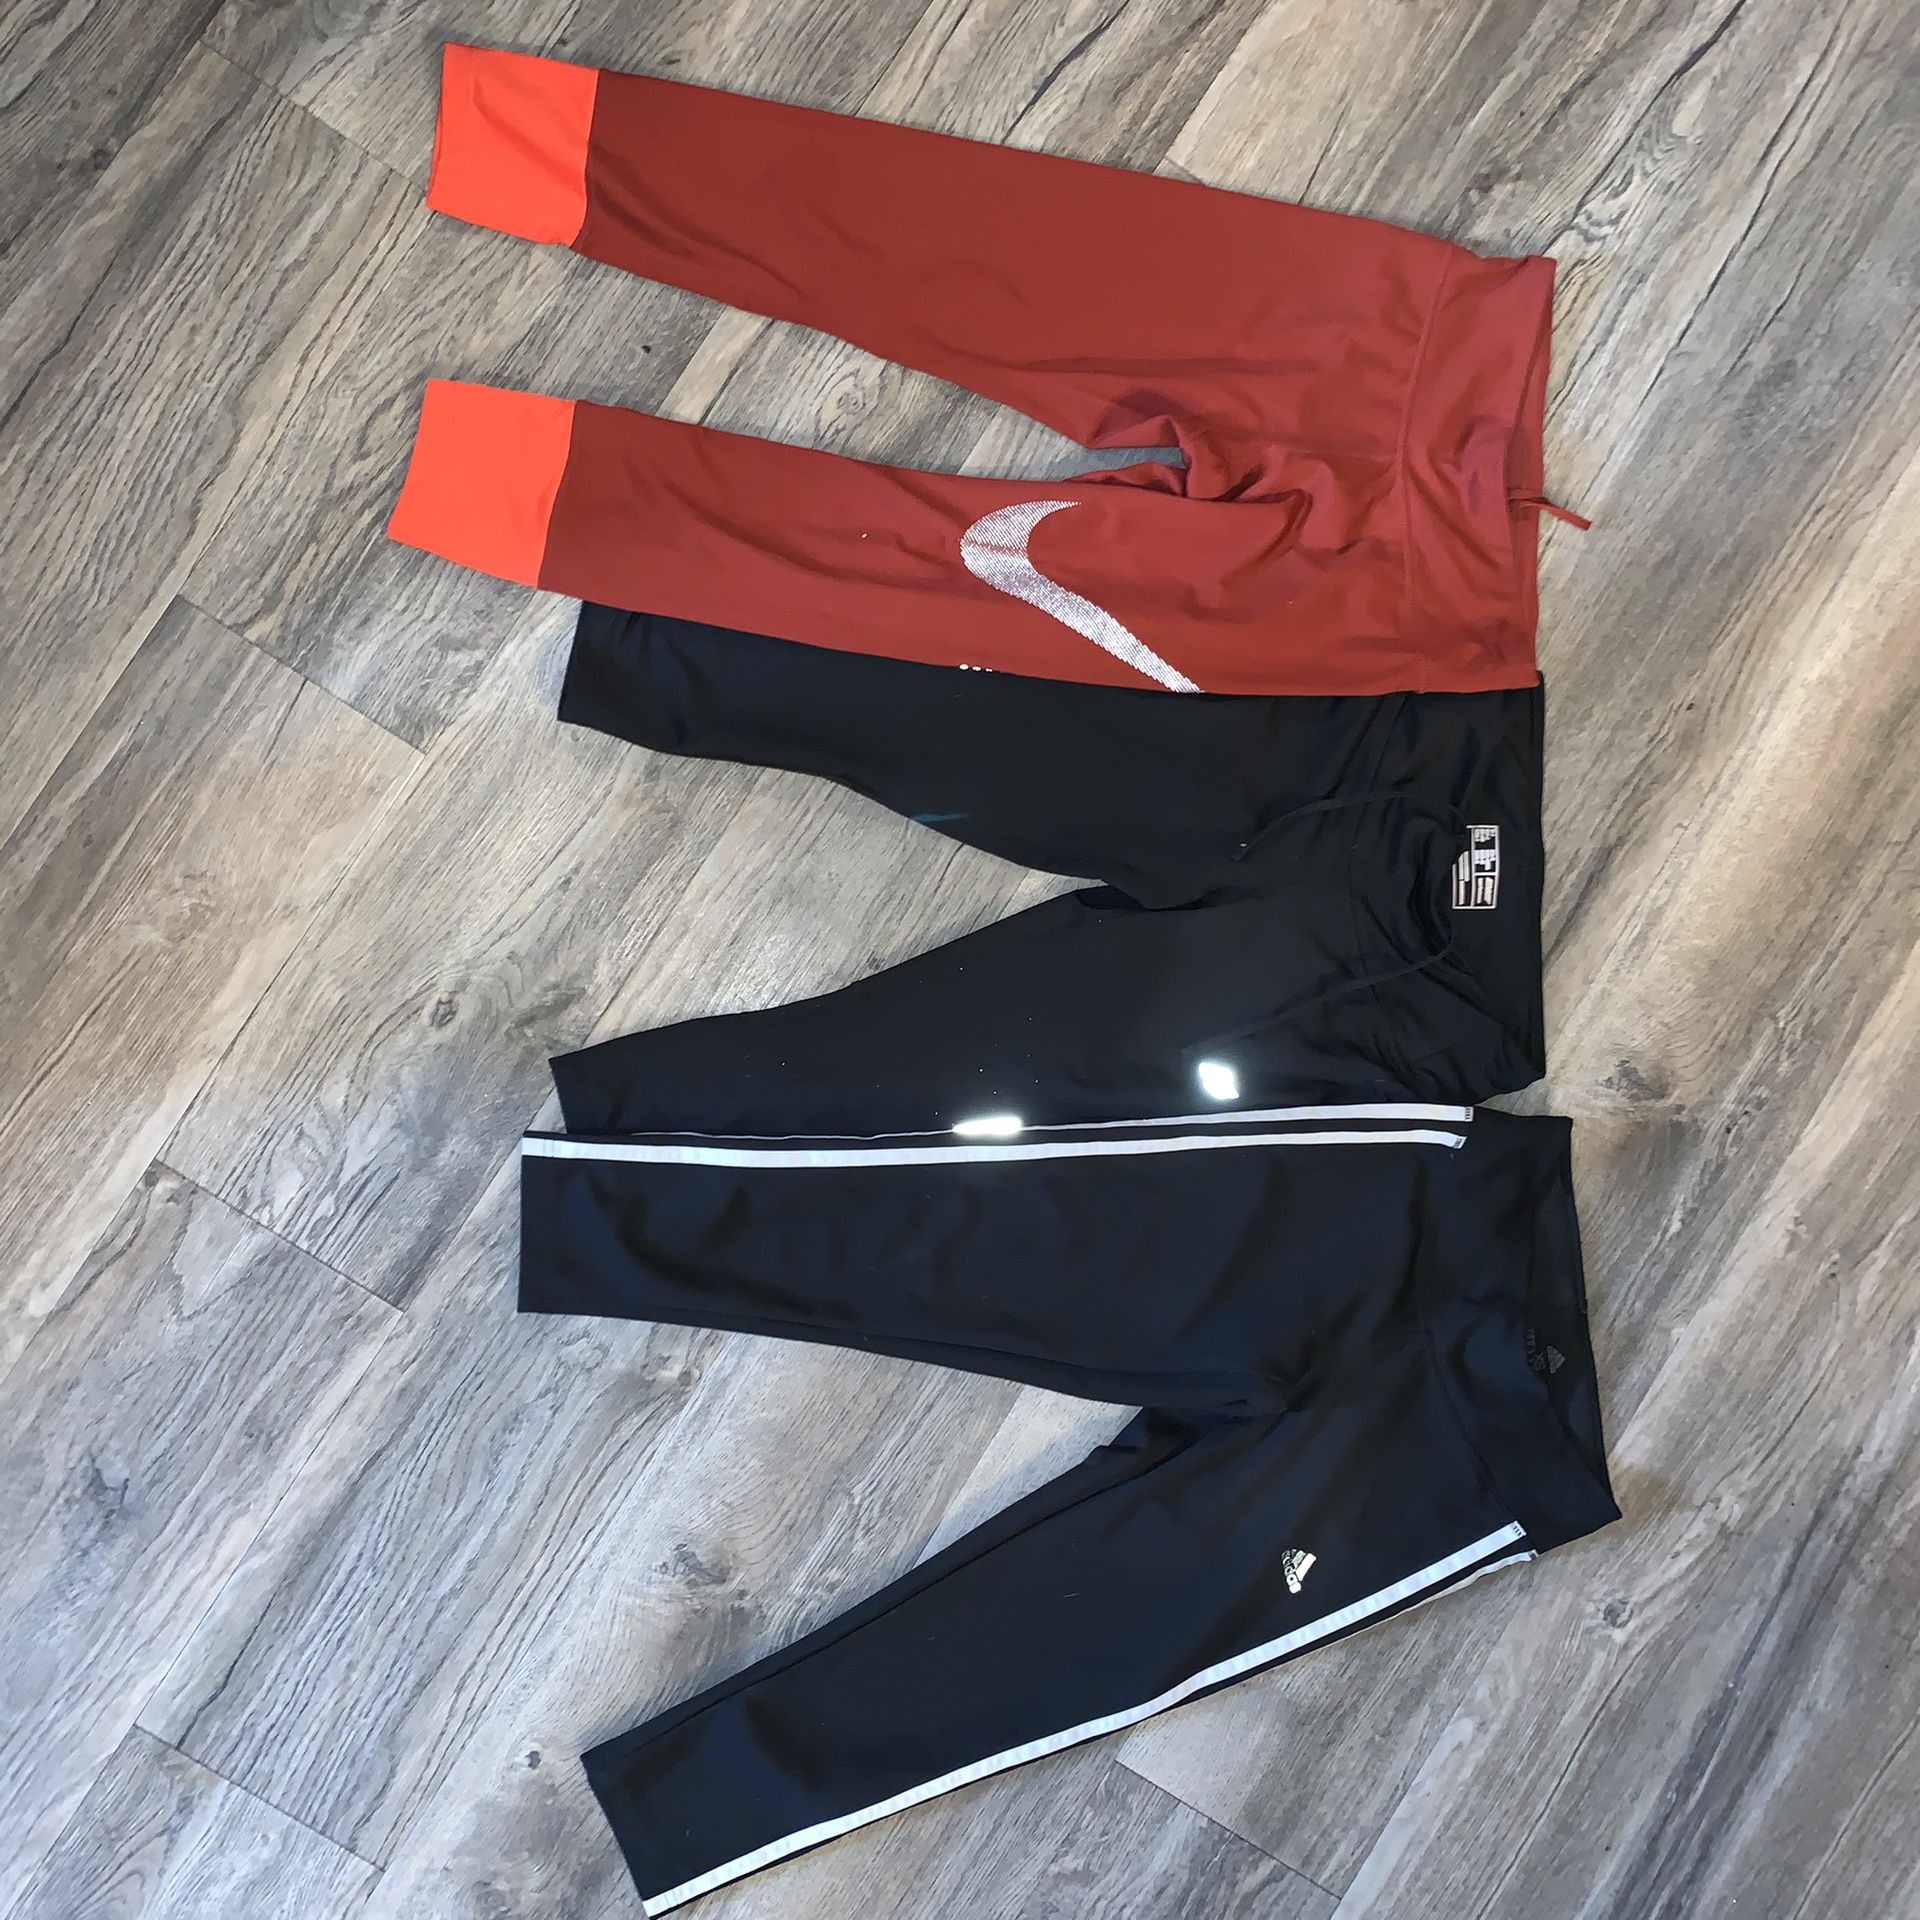 Athletic leggings, three pairs